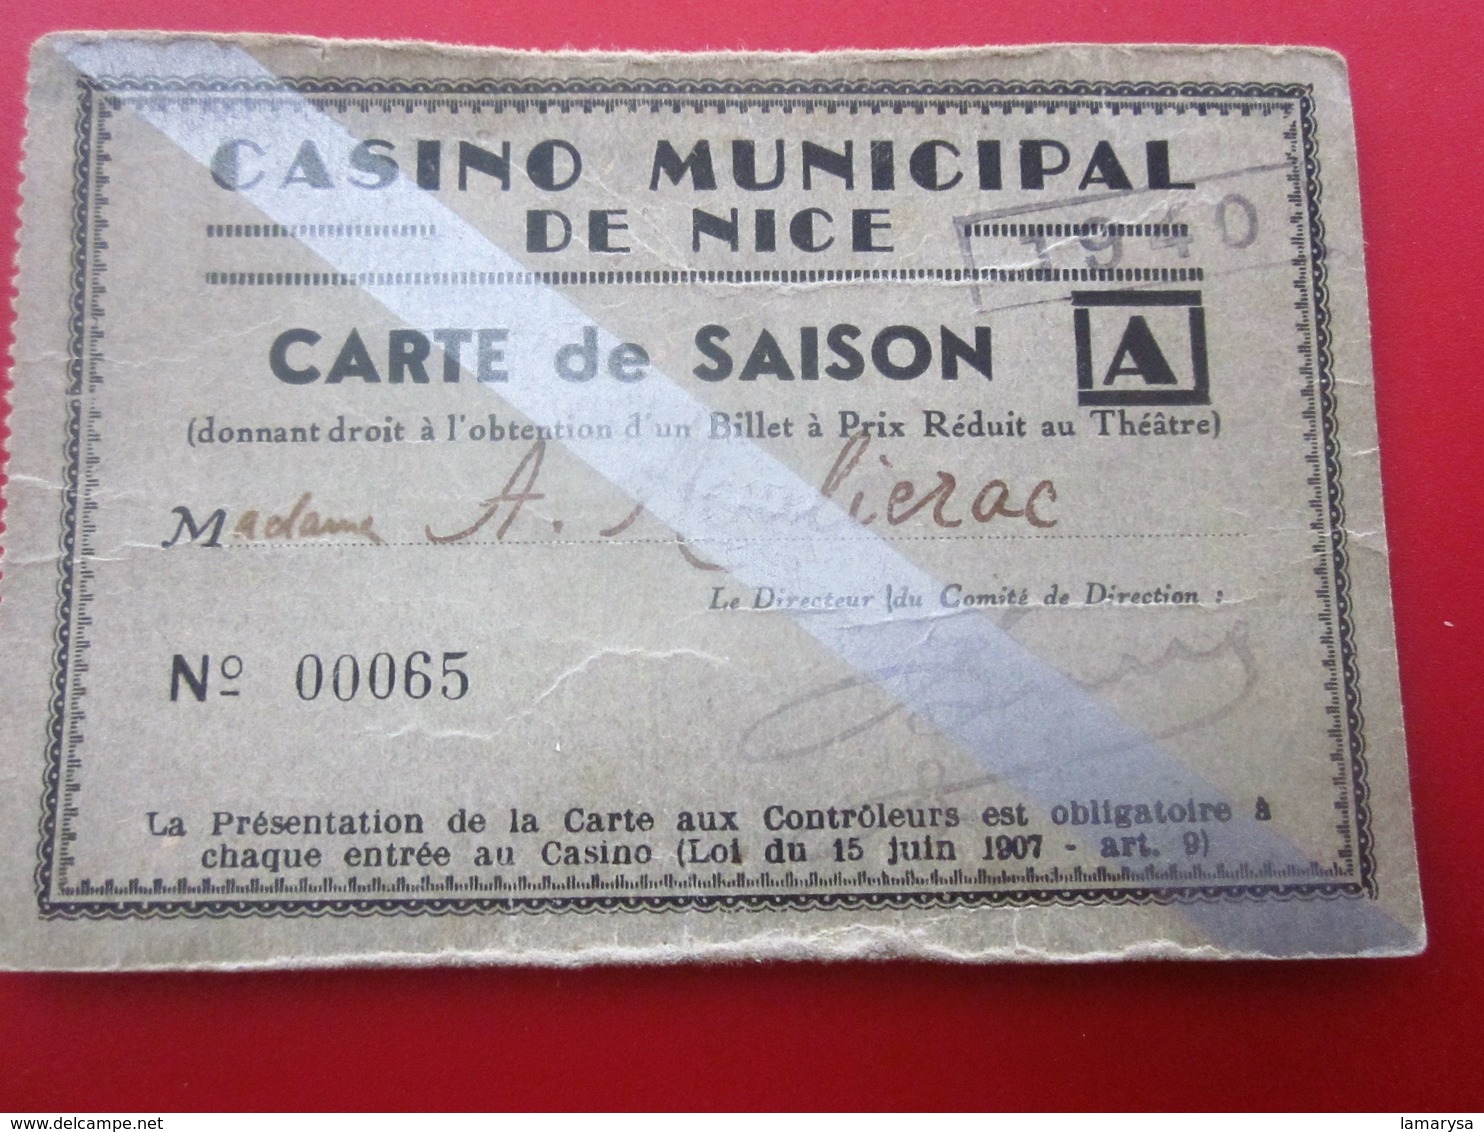 1940 WW2 CASINO MUNICIPAL NICE CARTE SAISON PRIX RÉDUIT THÉÂTRE Ticket Billet Entrée Entry Entrance-Biglietto D'ingresso - Tickets - Vouchers